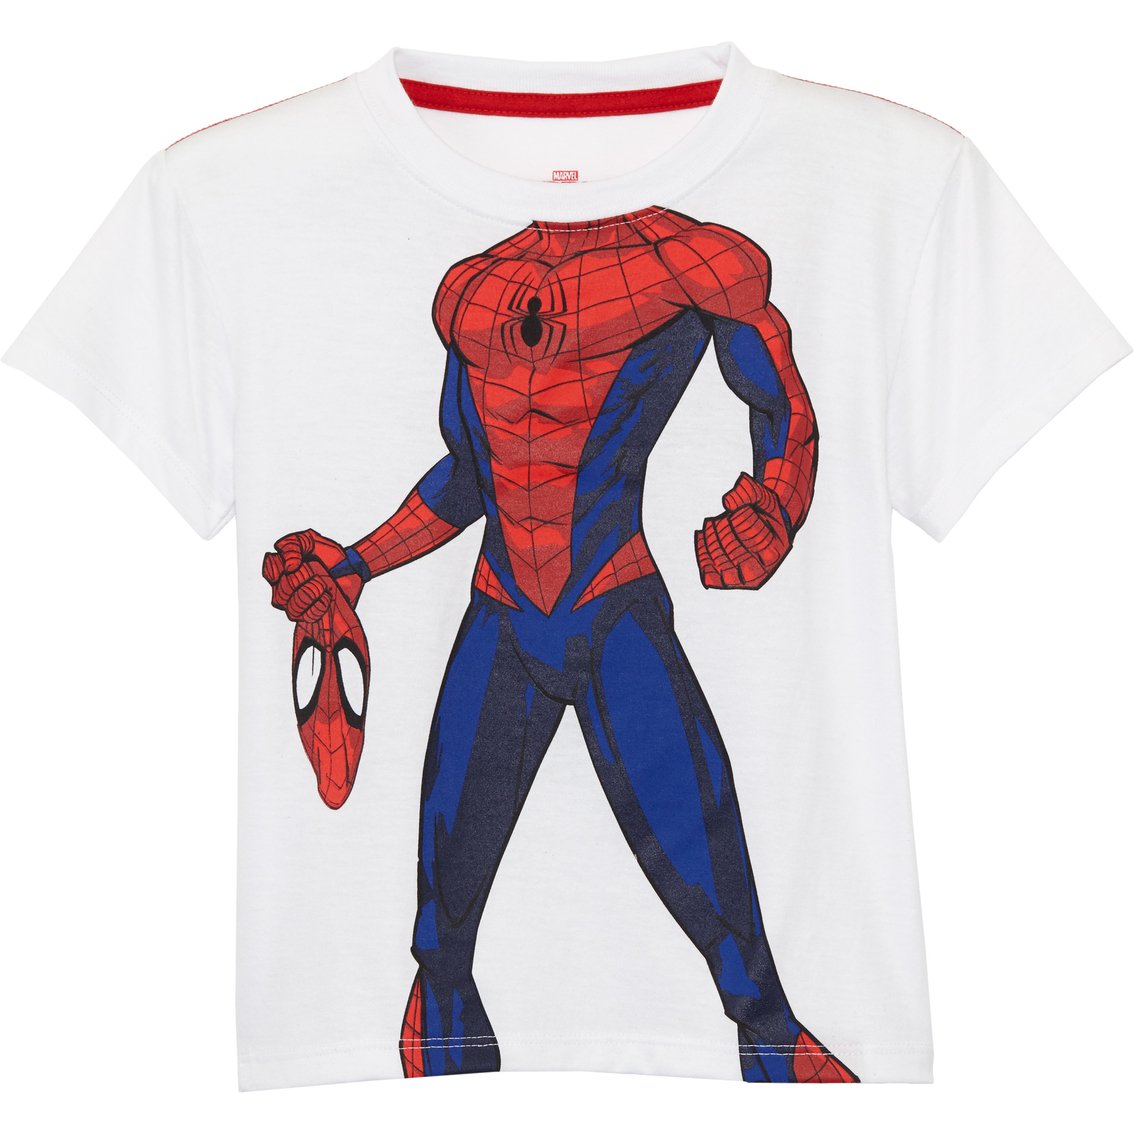 Marvel Toddler Boys Spider-man Headless Basic Tee | Toddler Boys 2t-4t ...